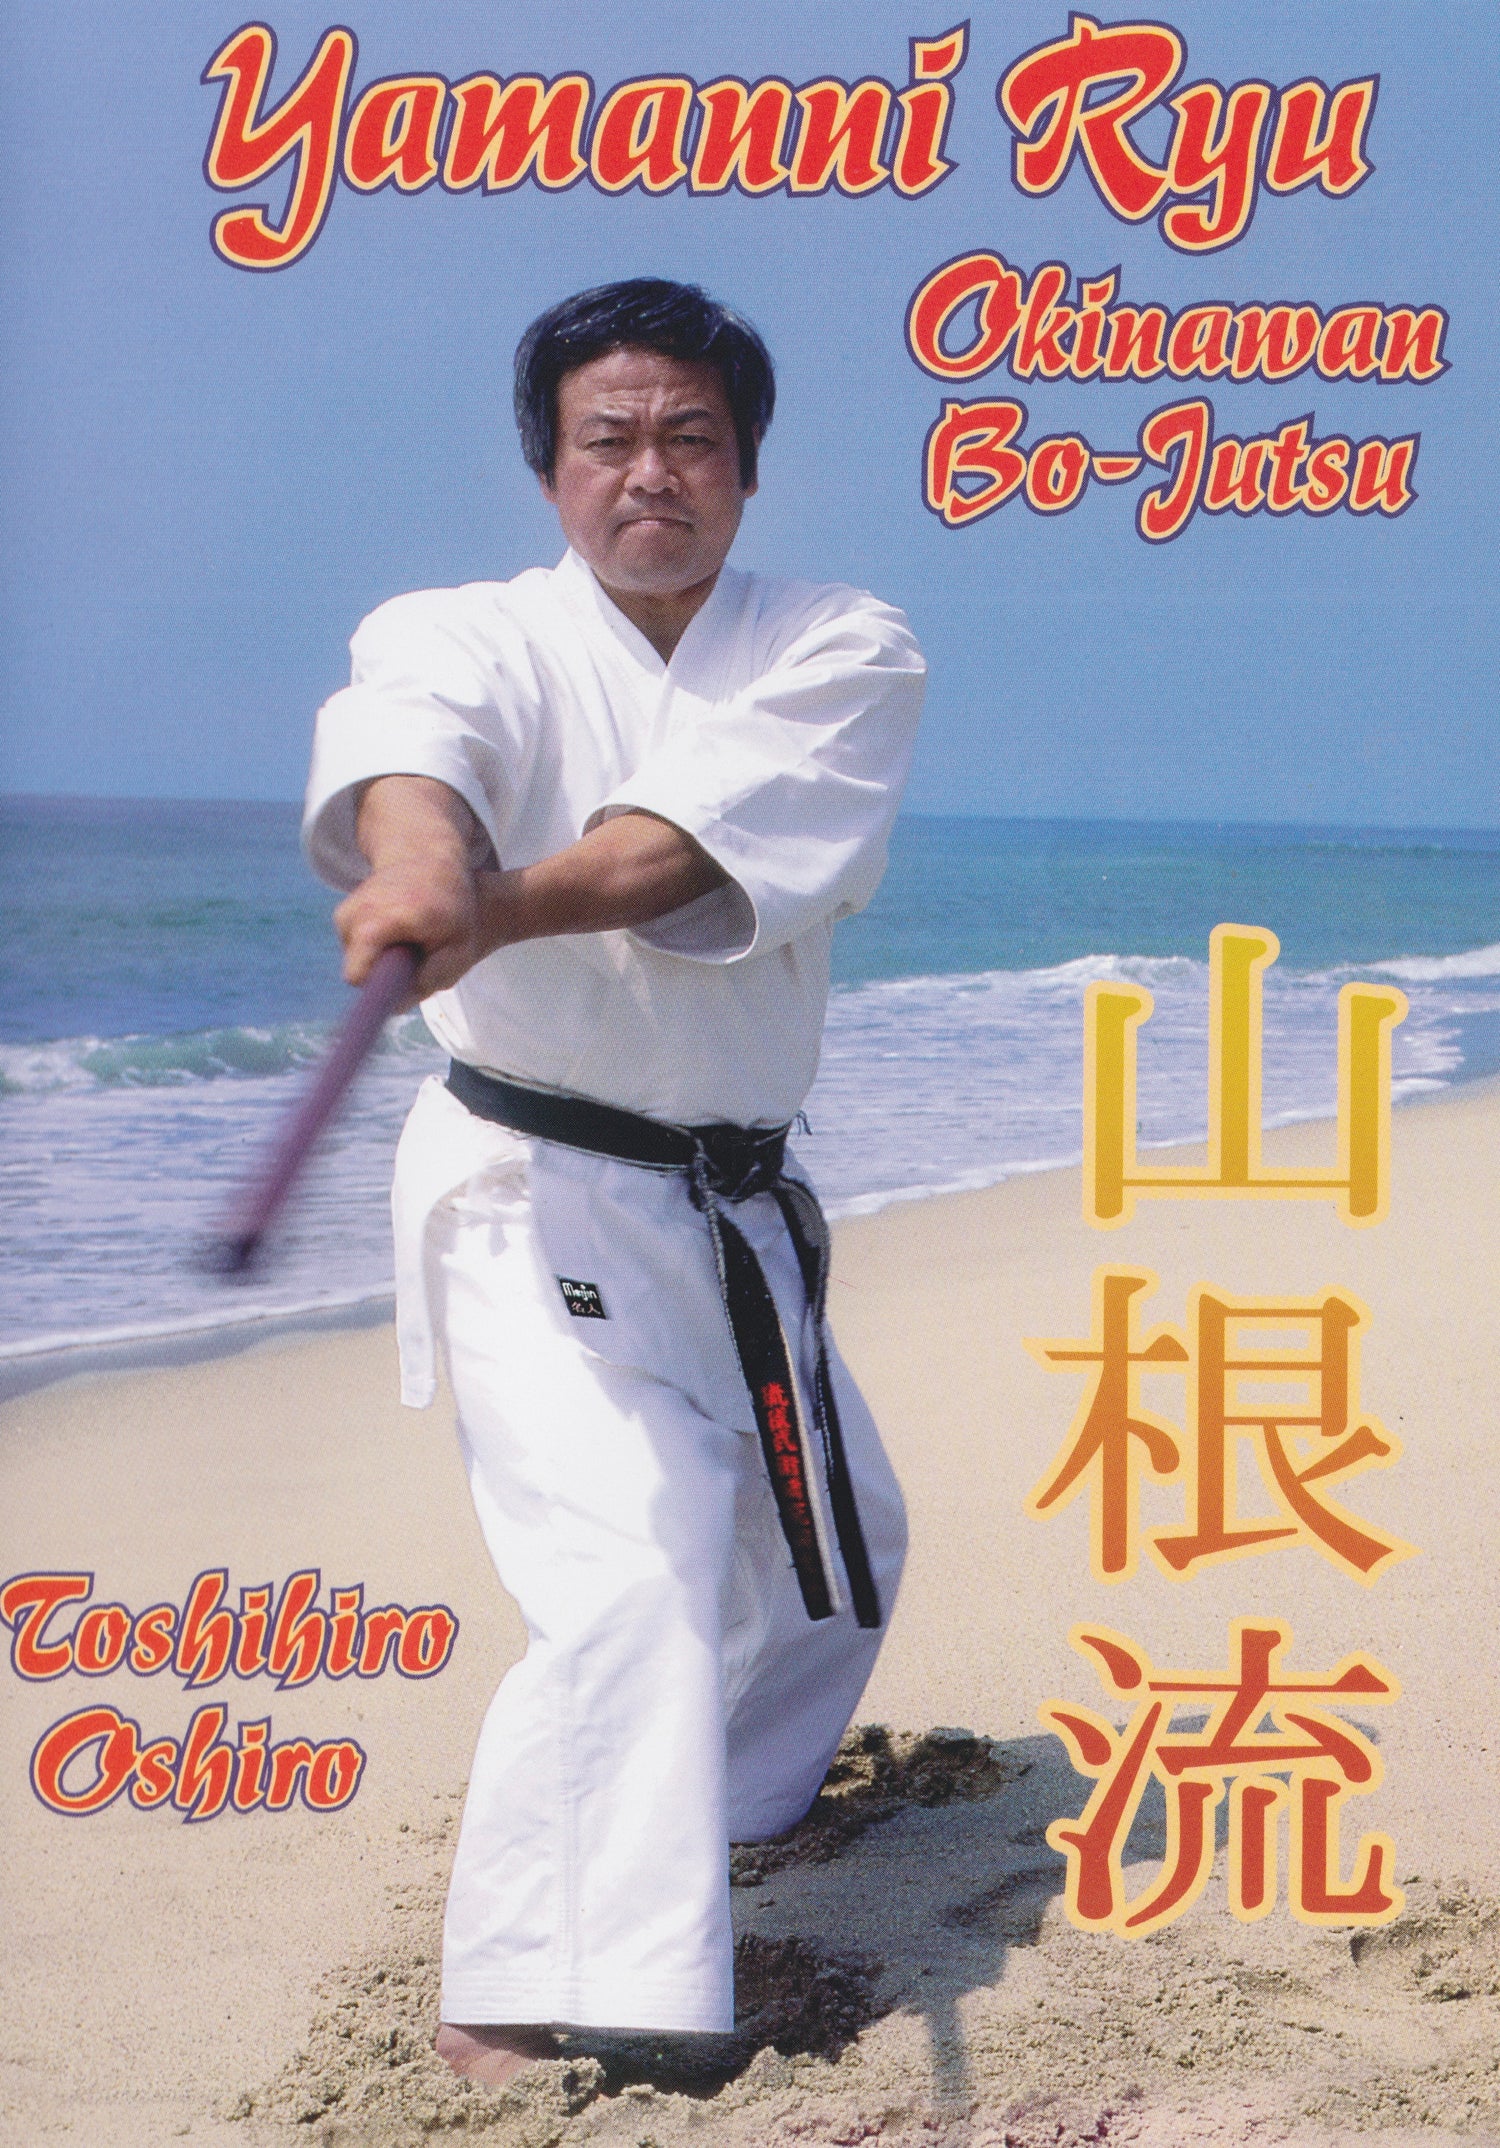 Yamanni Ryu: DVD de Bo-Jutsu de Okinawa con Toshihiro Oshiro